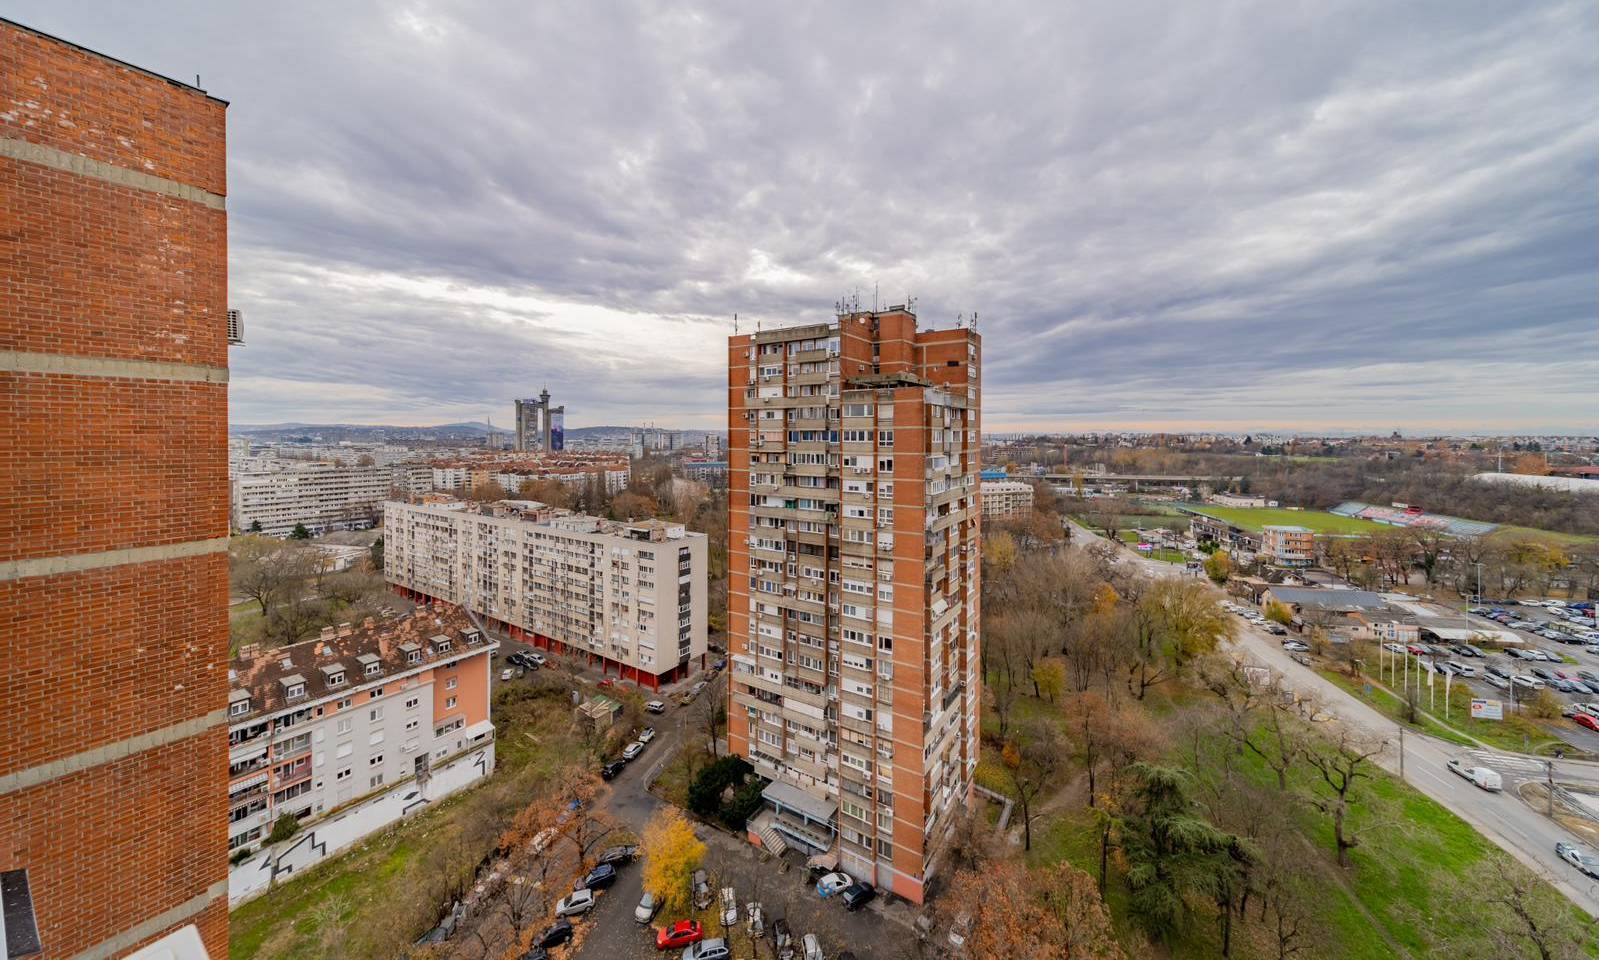 apartman Perper new, Novi Beograd, Beograd